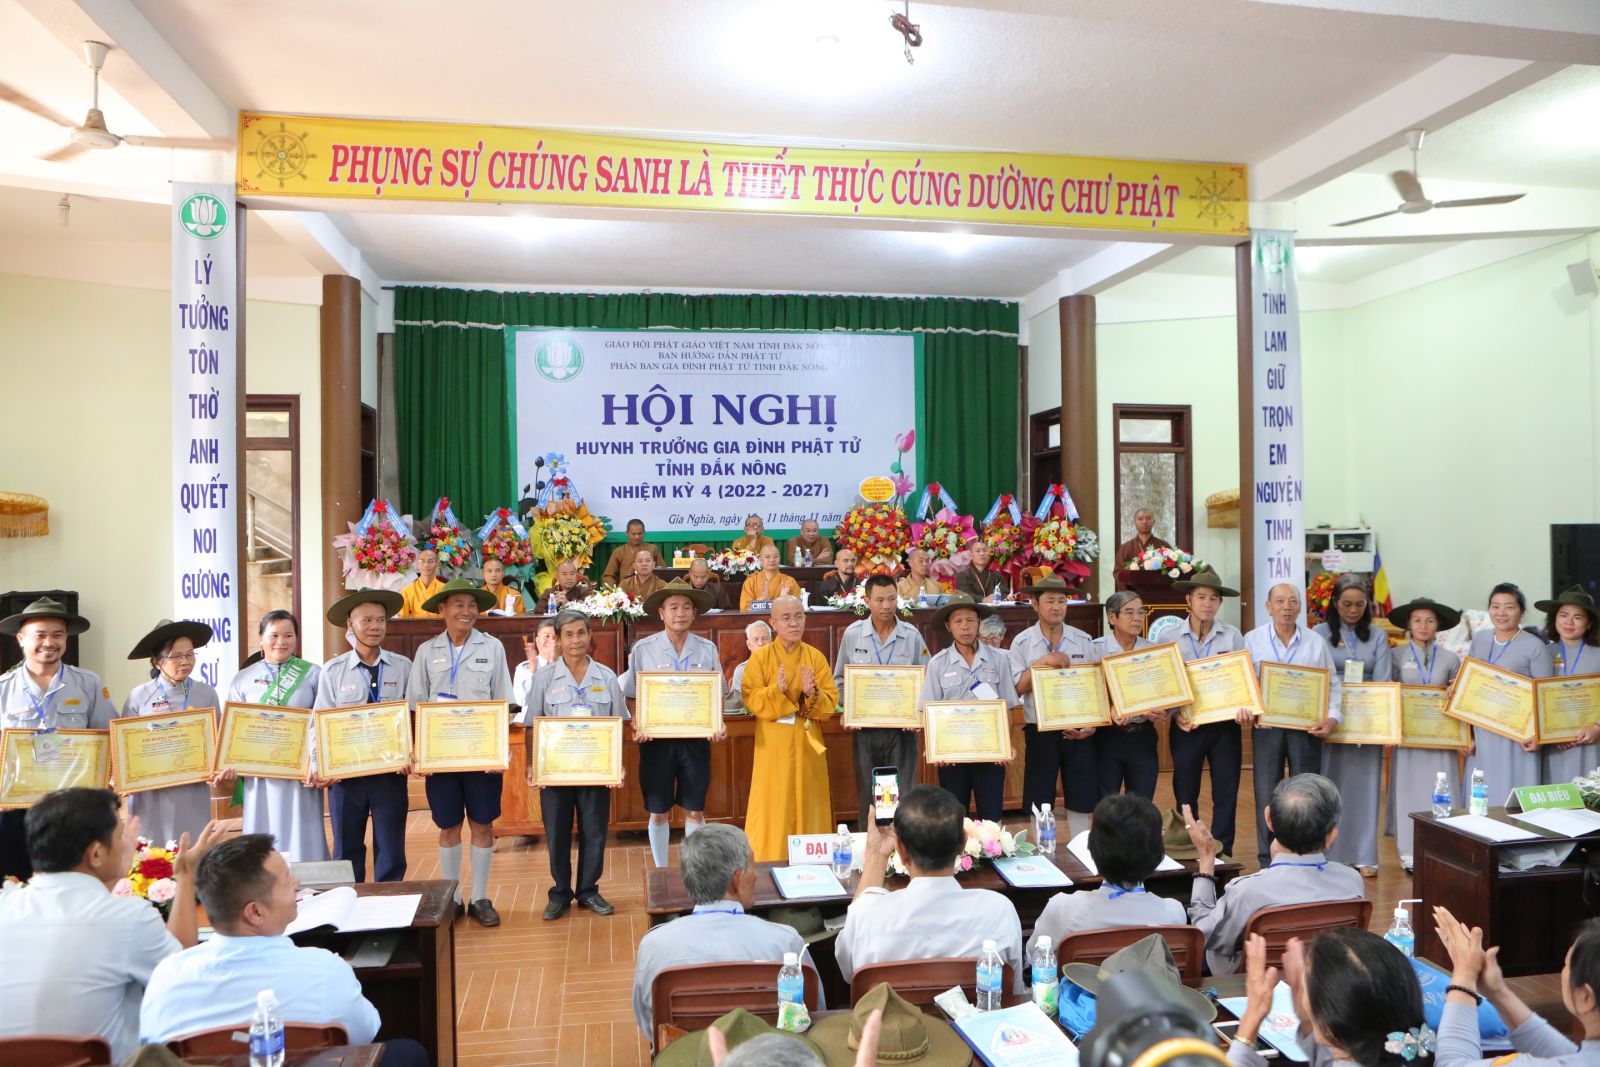 Hội nghị Đại biểu Huynh trưởng Gia đình Phật tử tỉnh Đắk Nông lần thứ IV nhiệm kỳ 2022-2027